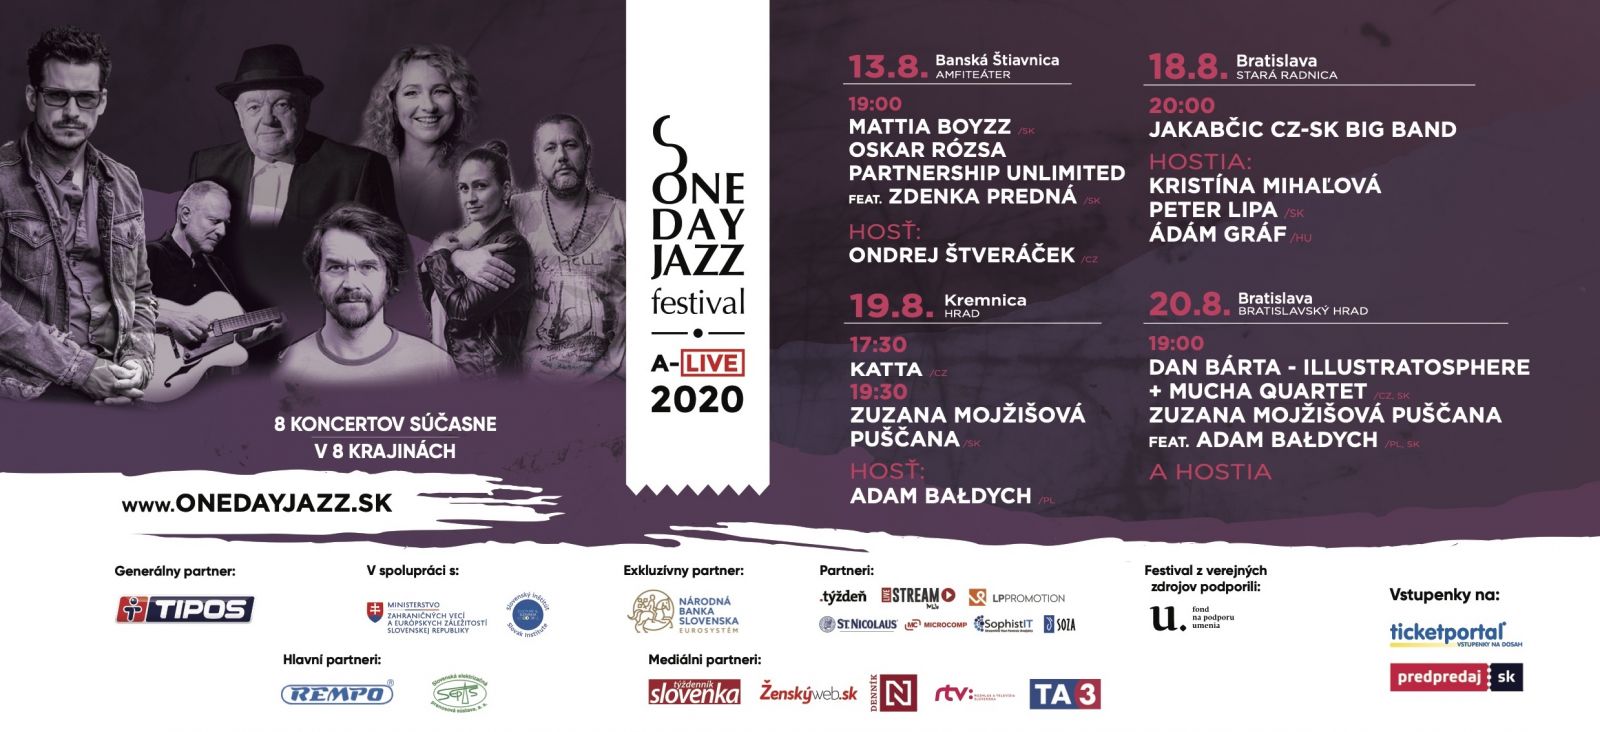 One Day Jazz Festival pokračuje 4 koncertami pre verejnosť